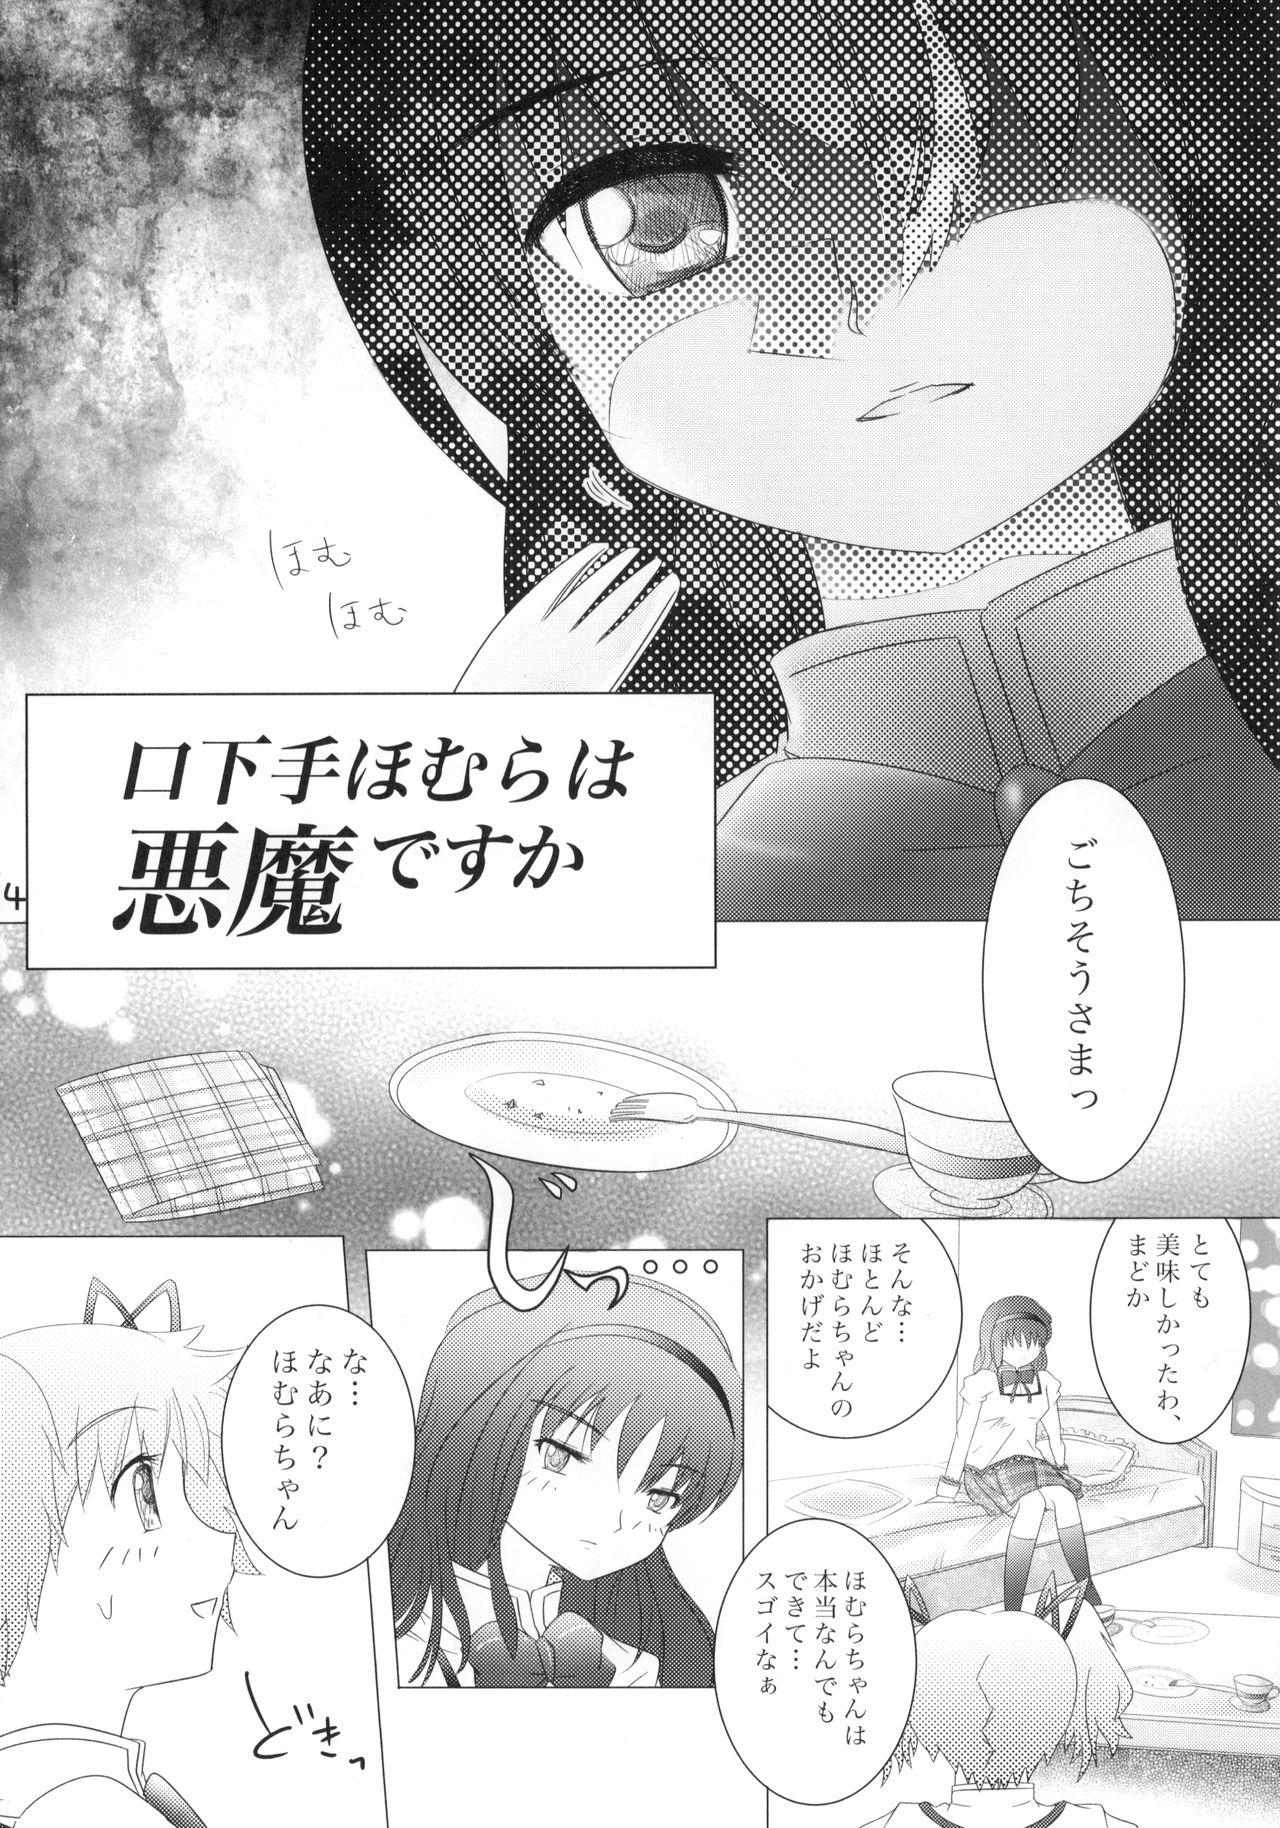 Metendo Kuchibeta Homura wa Akuma desu ka? - Puella magi madoka magica Inked - Page 5